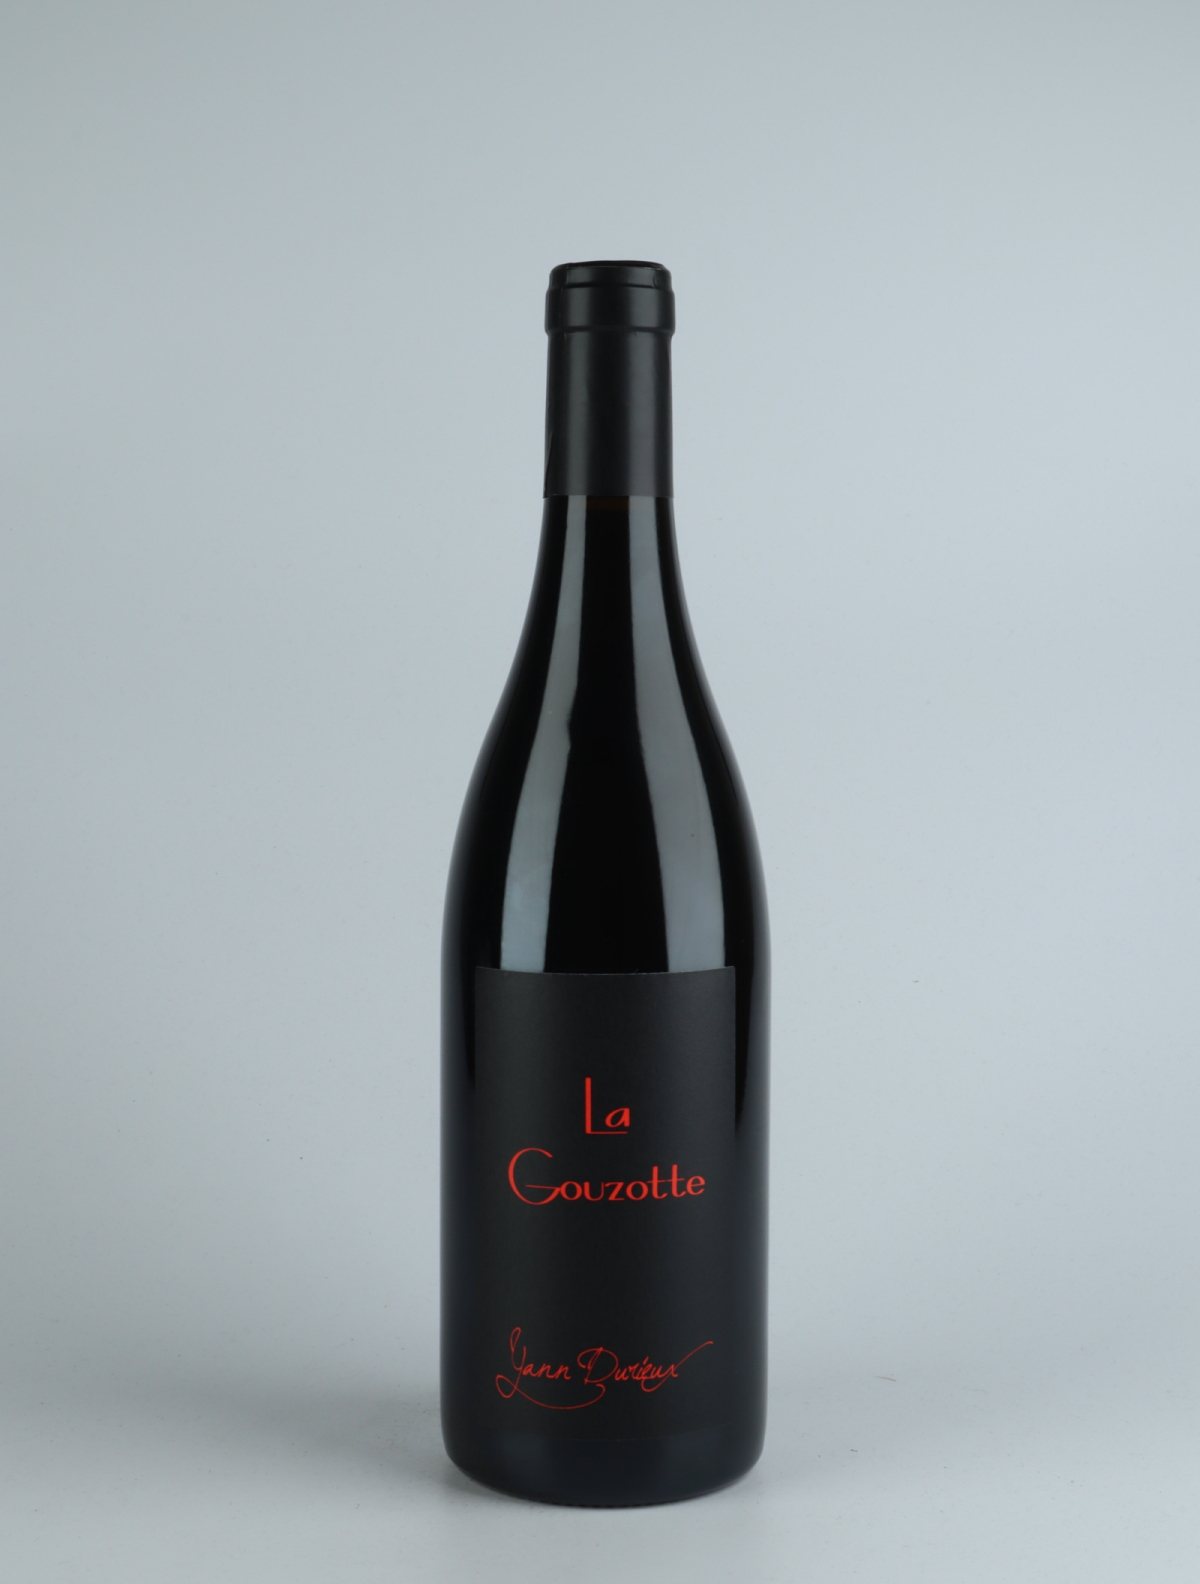 En flaske 2018 La Gouzotte Rødvin fra Yann Durieux, Bourgogne i Frankrig